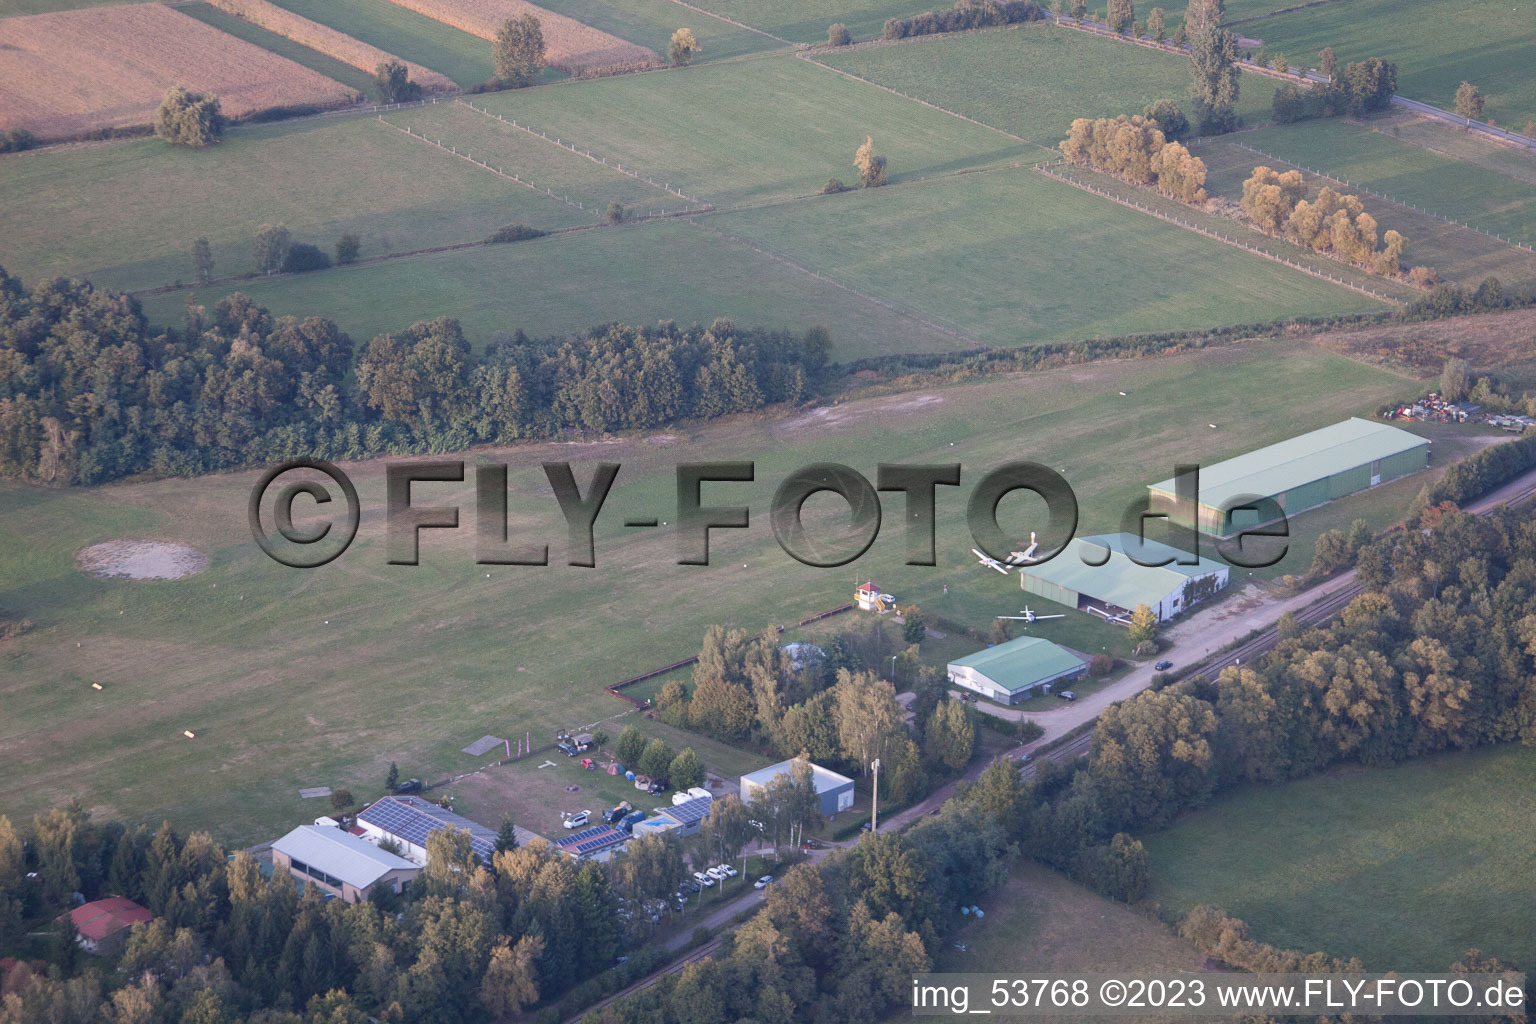 Schweighofen, Flugplatz im Bundesland Rheinland-Pfalz, Deutschland von oben